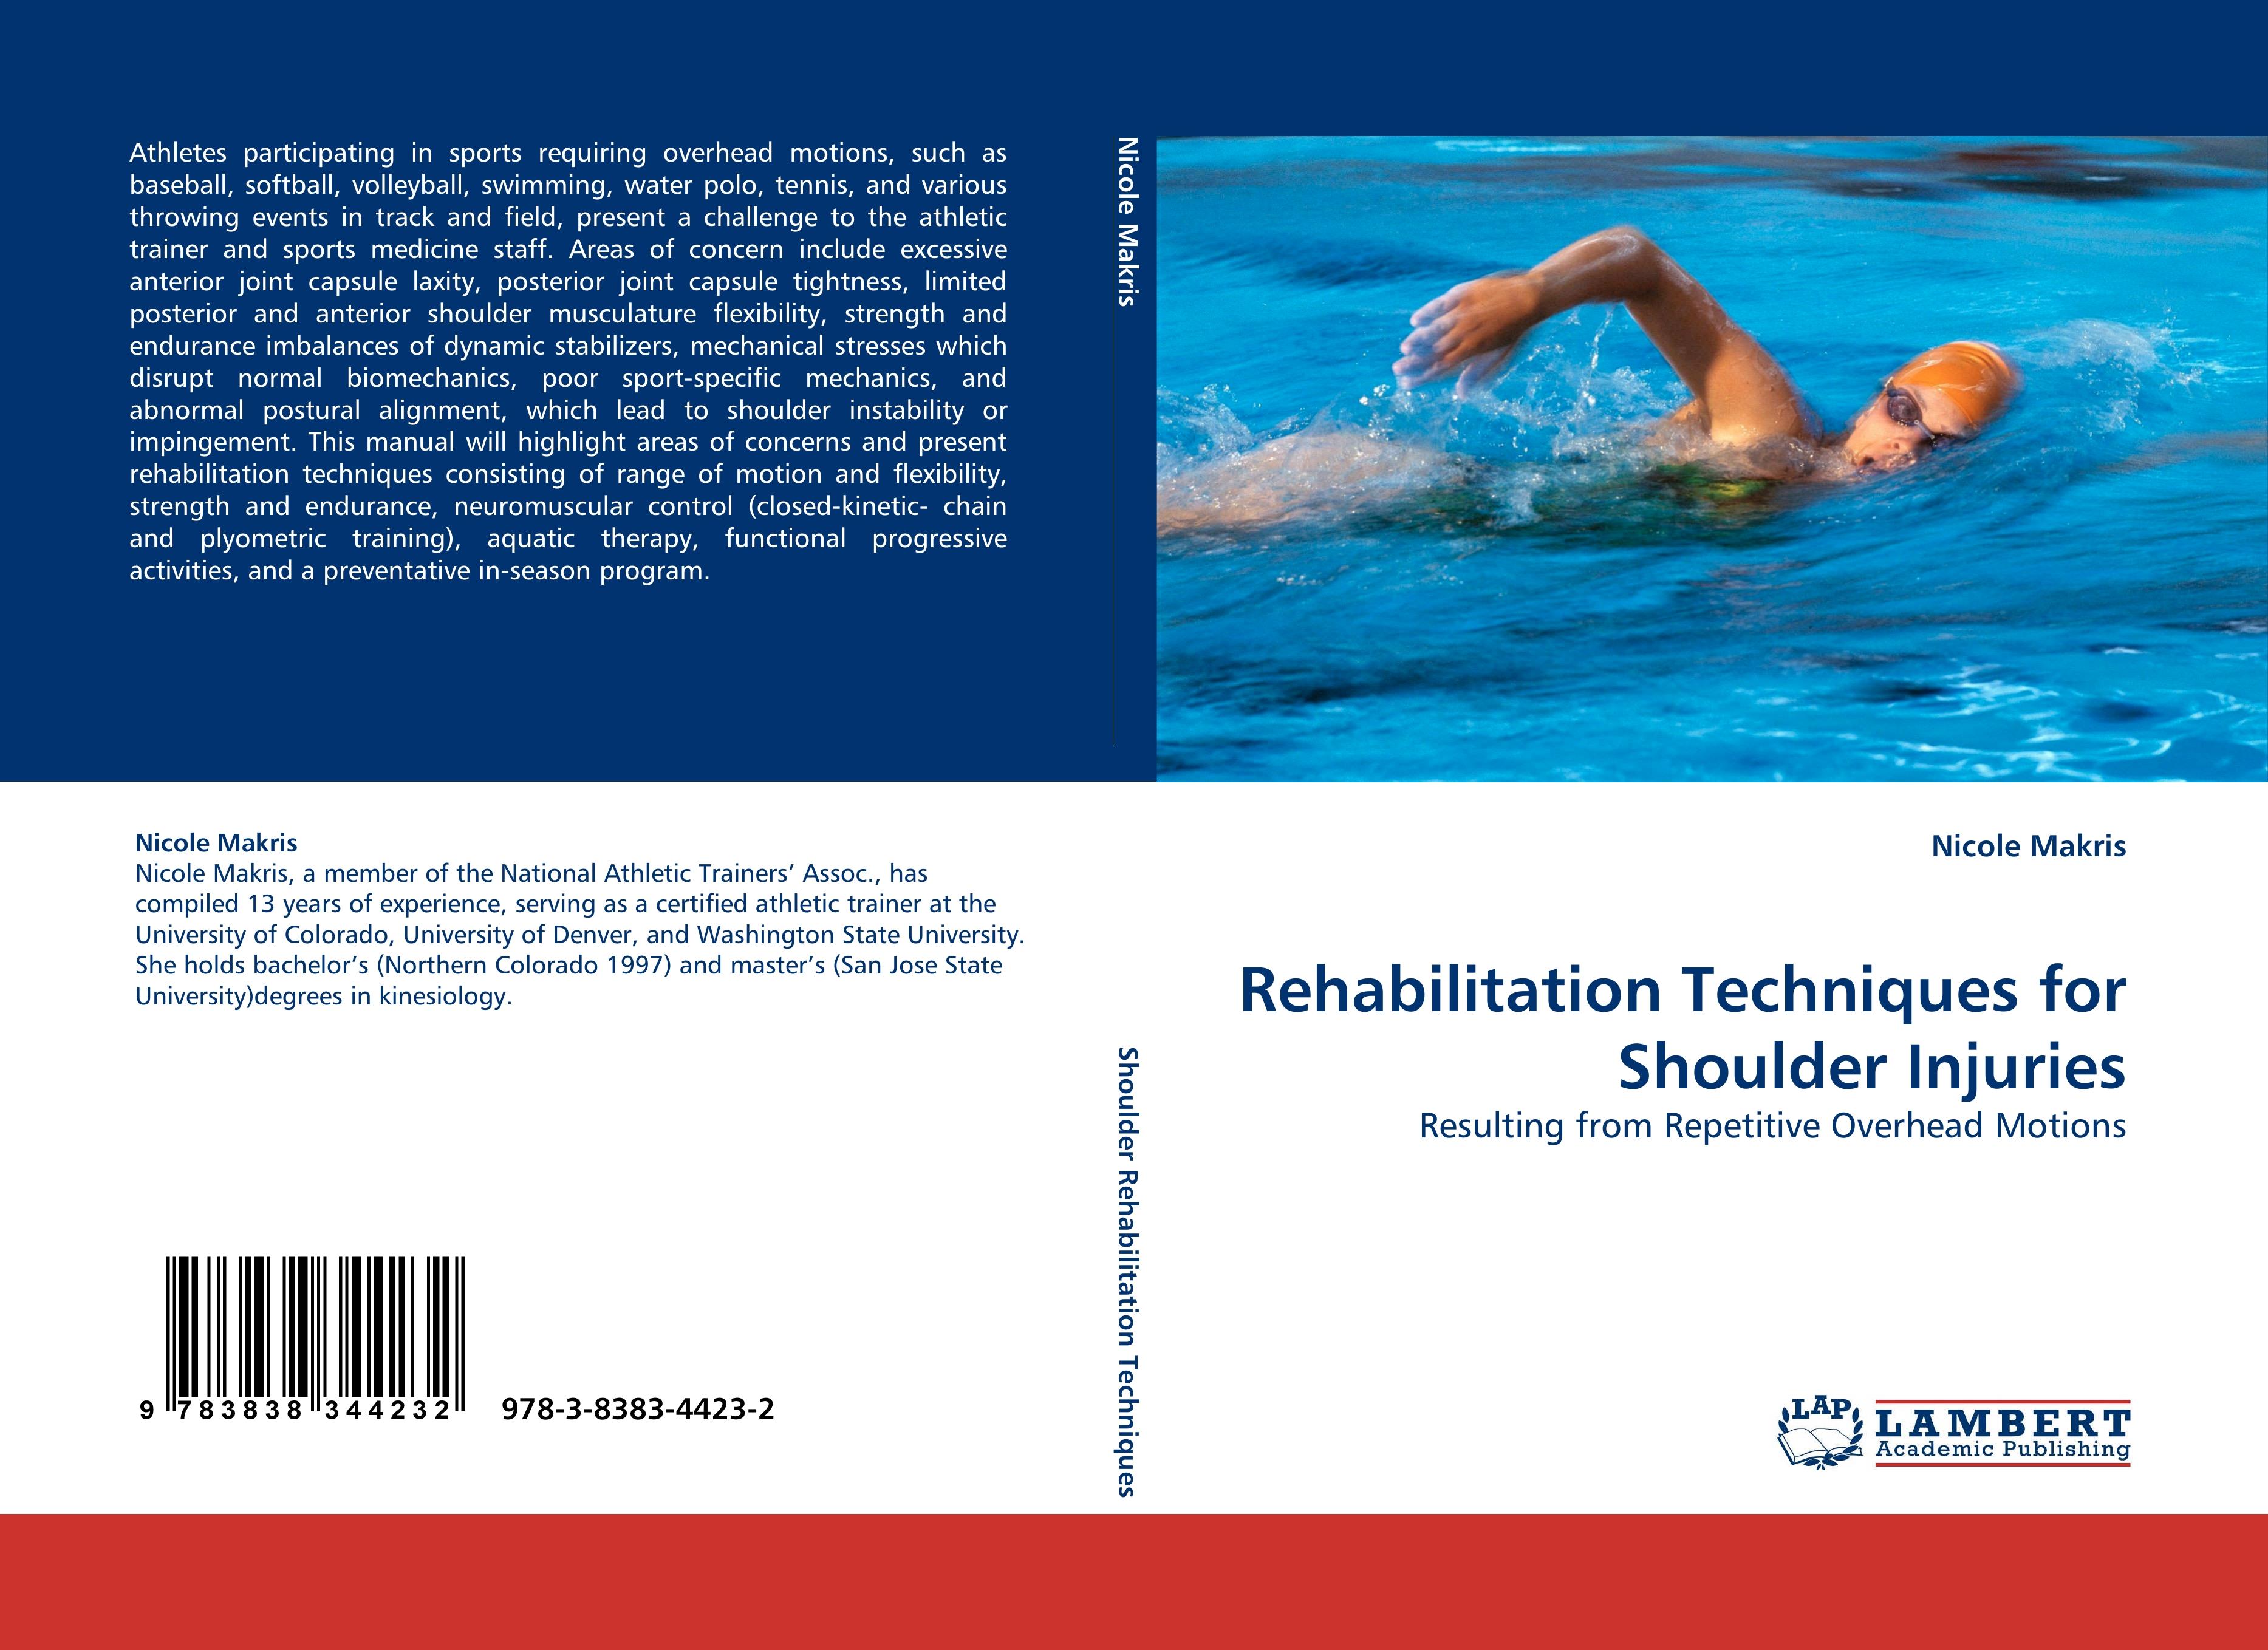 Rehabilitation Techniques for Shoulder Injuries - Nicole Makris